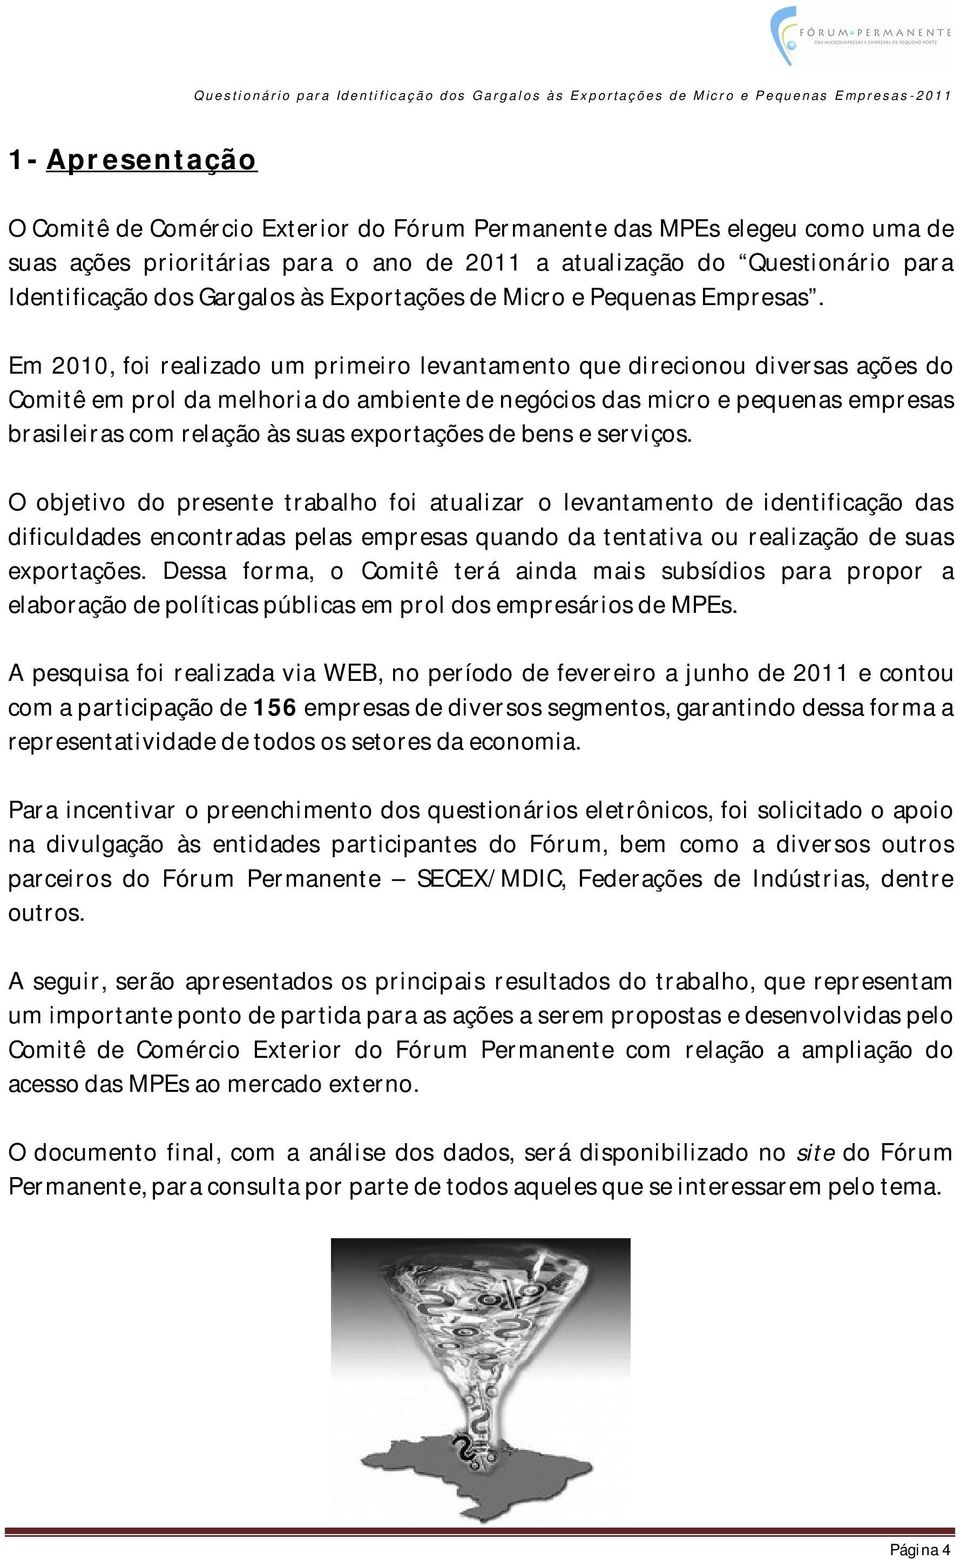 Em 2010, foi realizado um primeiro levantamento que direcionou diversas ações do Comitê em prol da melhoria do ambiente de negócios das micro e pequenas empresas brasileiras com relação às suas